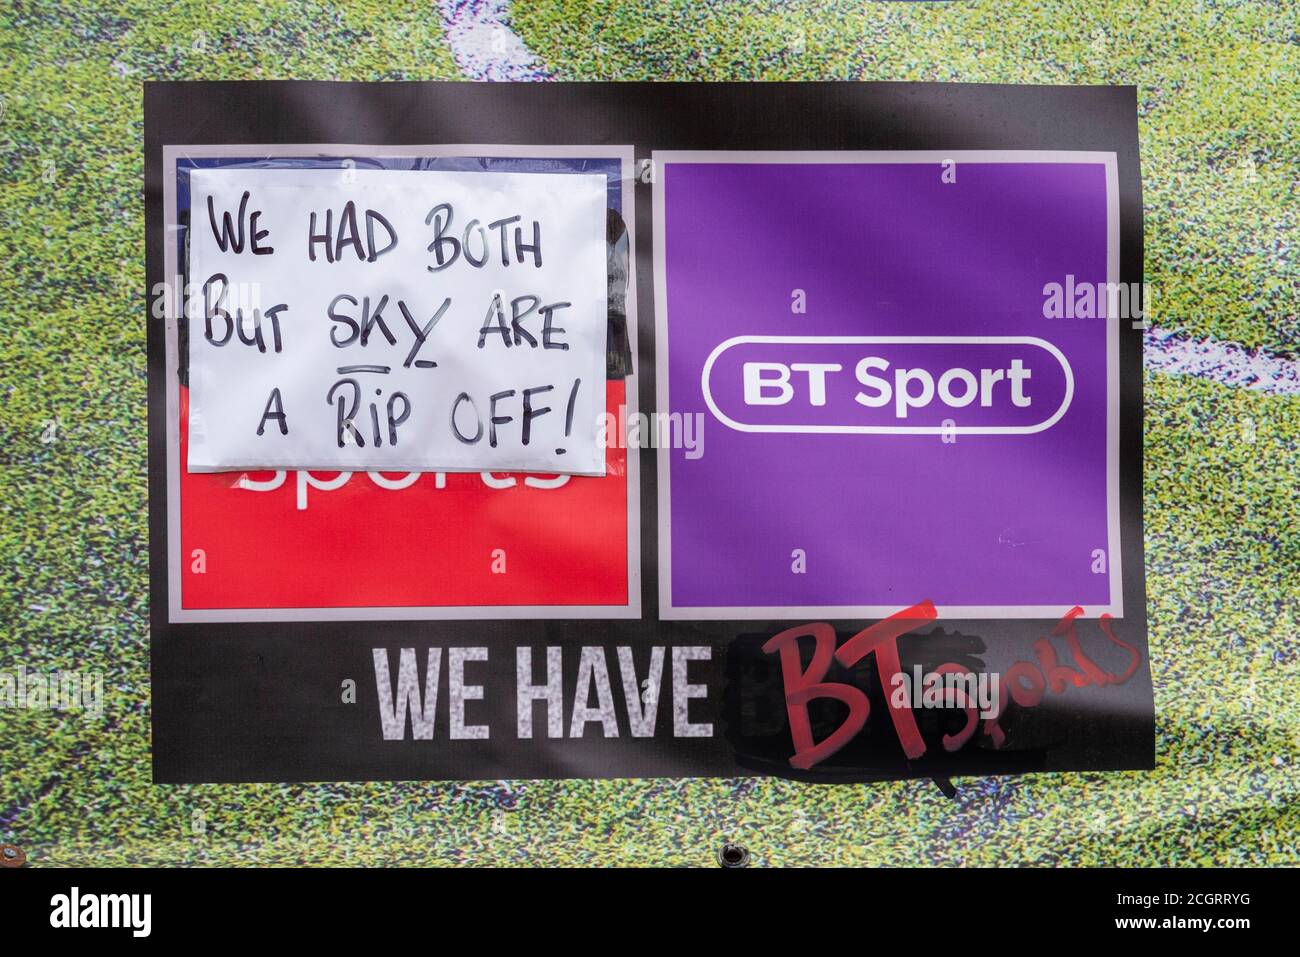 Panneau abusif devant le pub de Southend on Sea, accusant Sky Television d'être une arnaque. Publicité de la couverture TV BT Sport pour les clients à regarder Banque D'Images